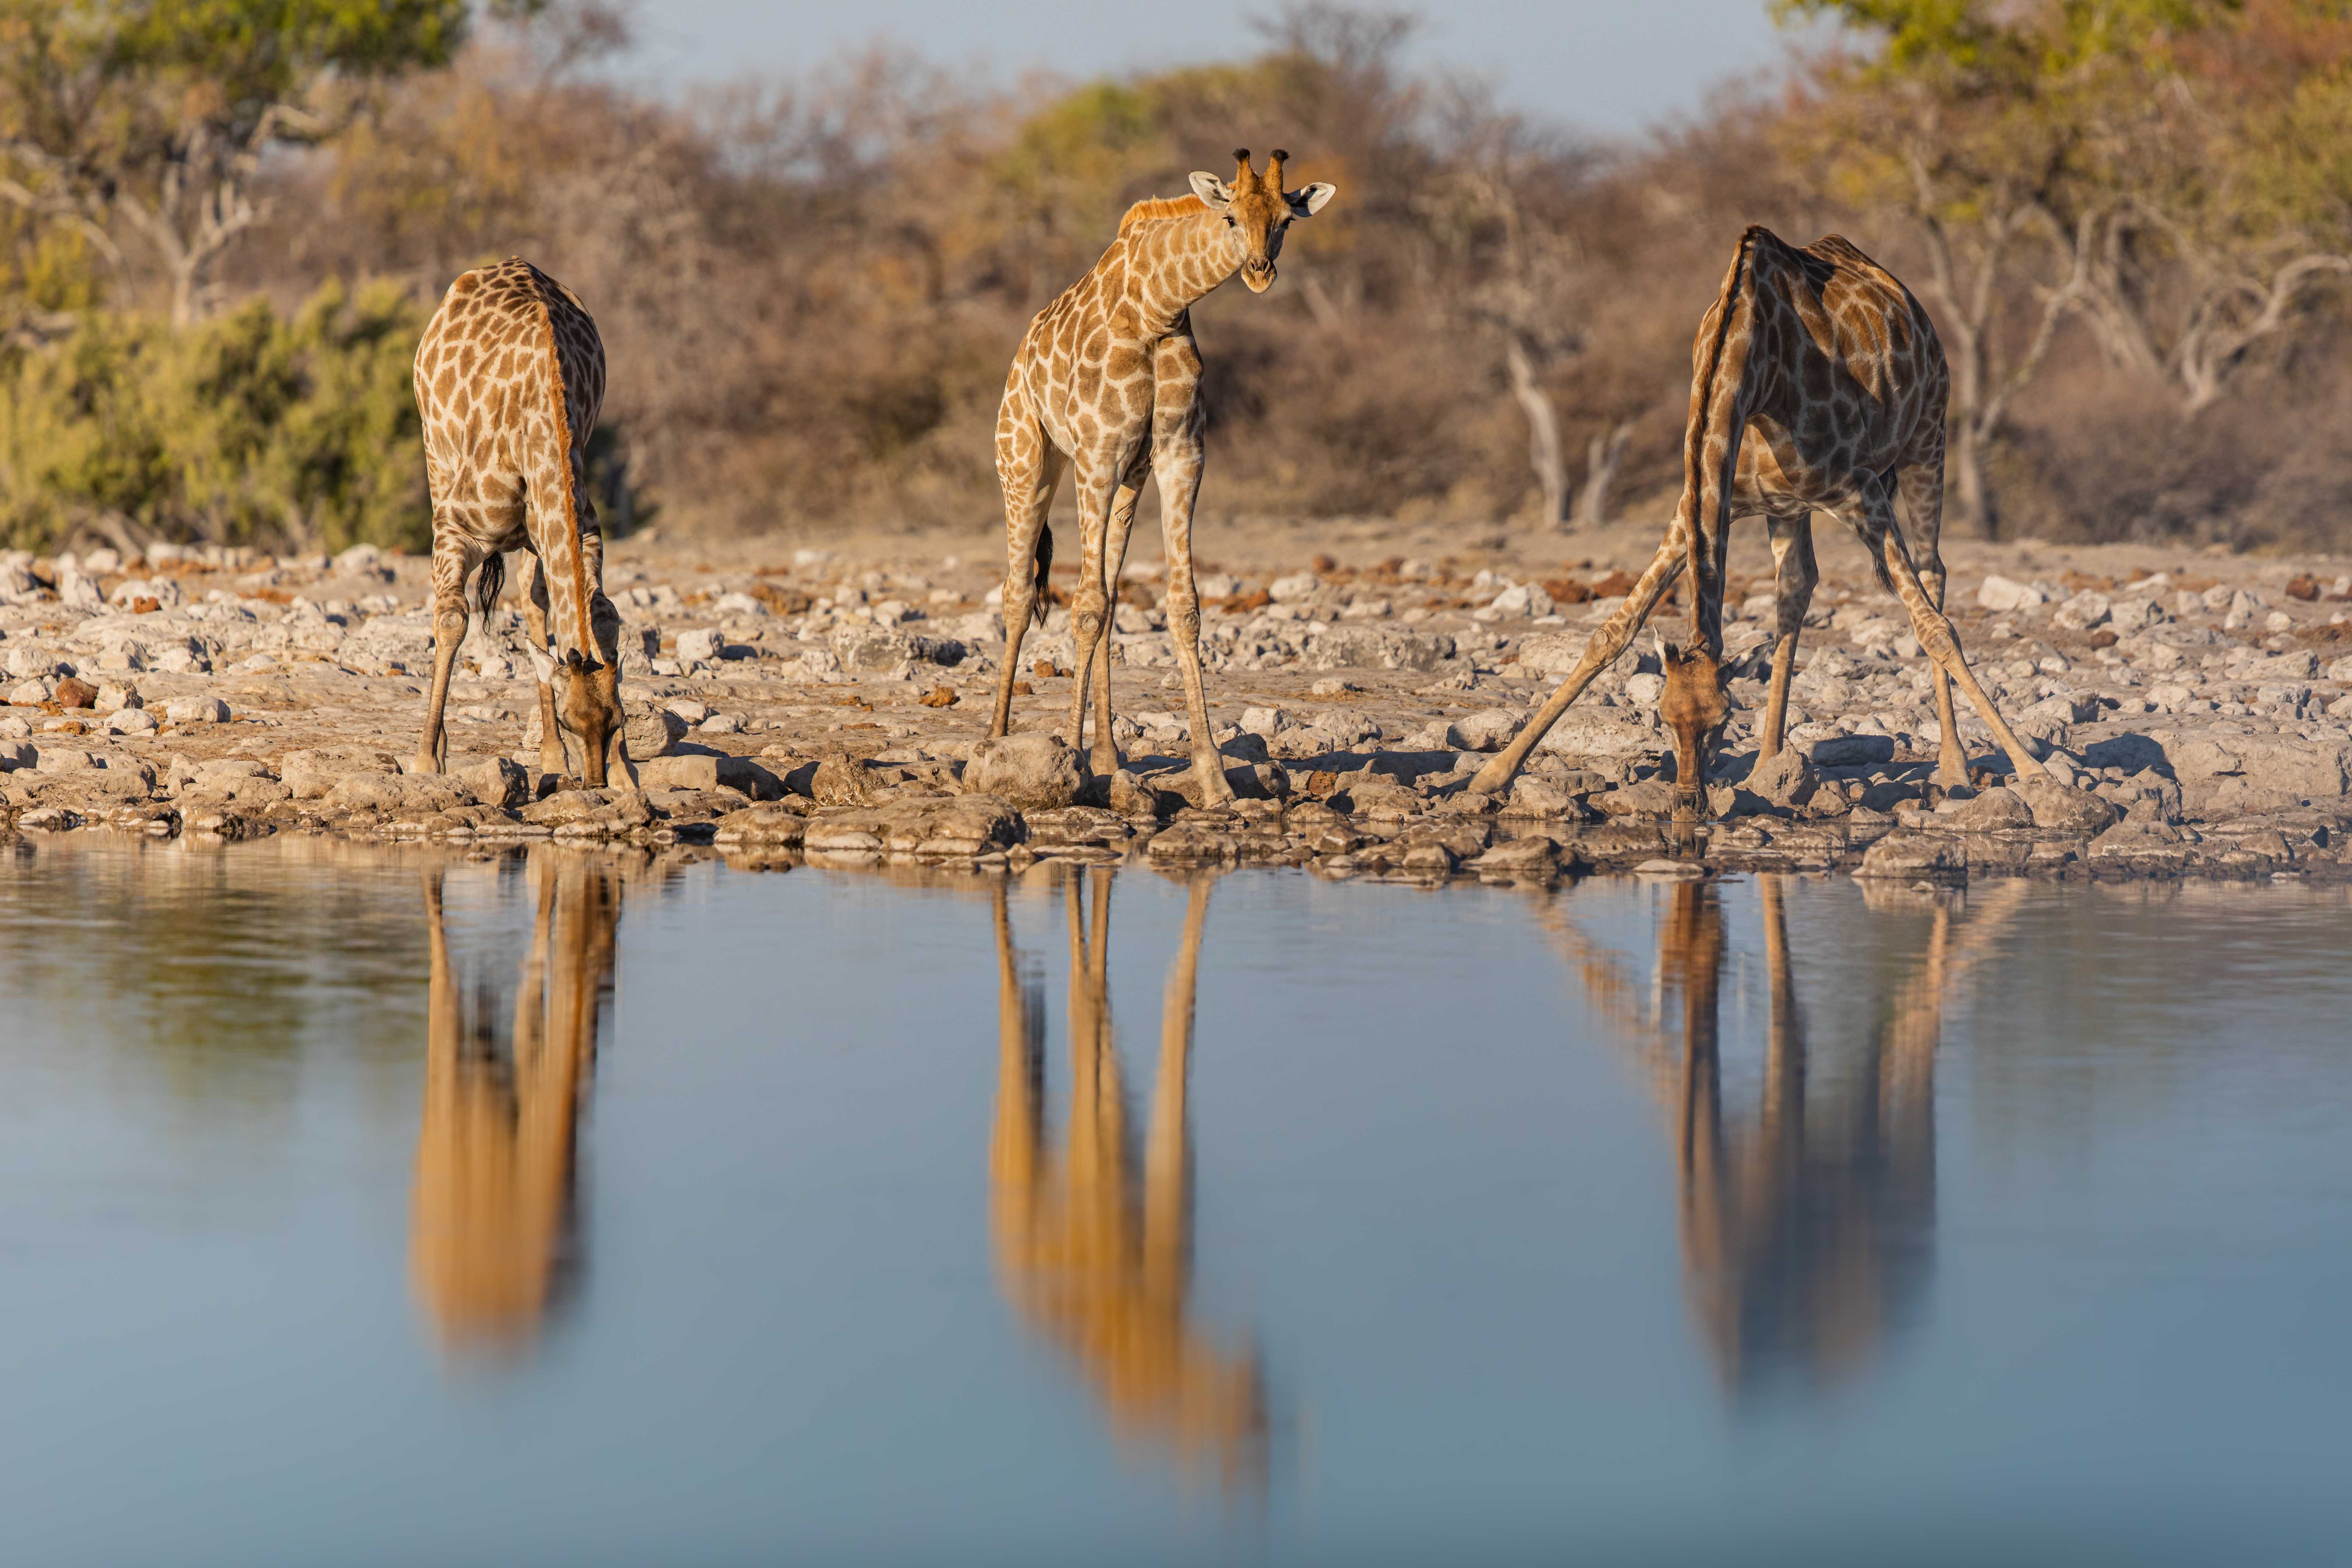 Family reunion, żyrafy u wodopoju w Parku Narodowym Etosza w Namibii, autor Janusz Galka